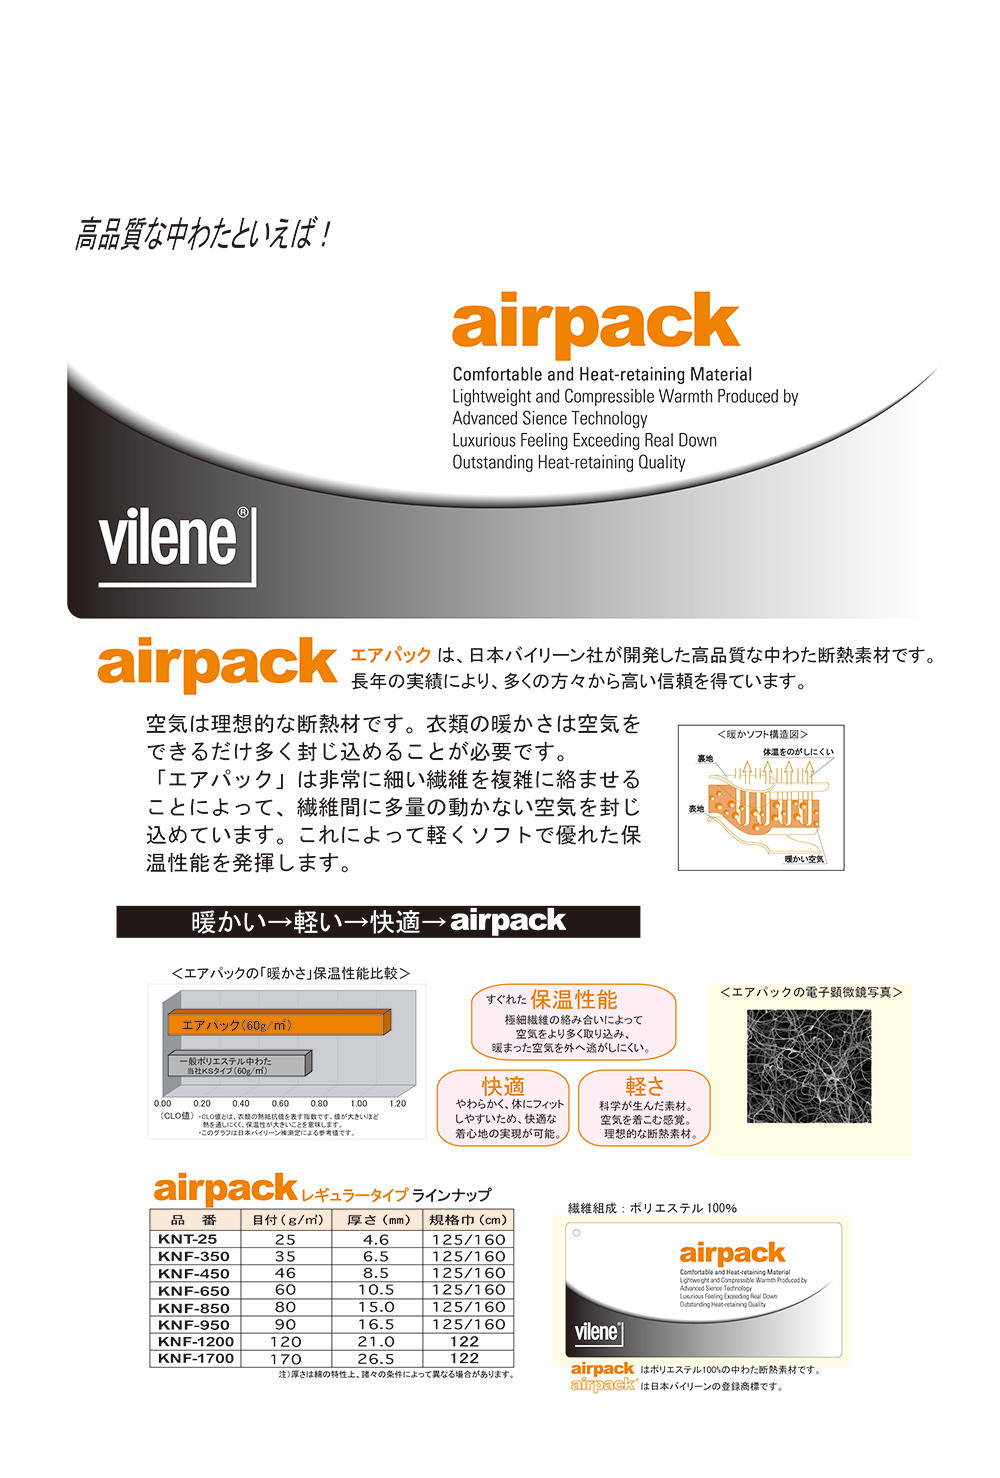 KNF650 Quilt Batting Air Pack 60g[Entoilage] Vilène (JAPAN Vilene)